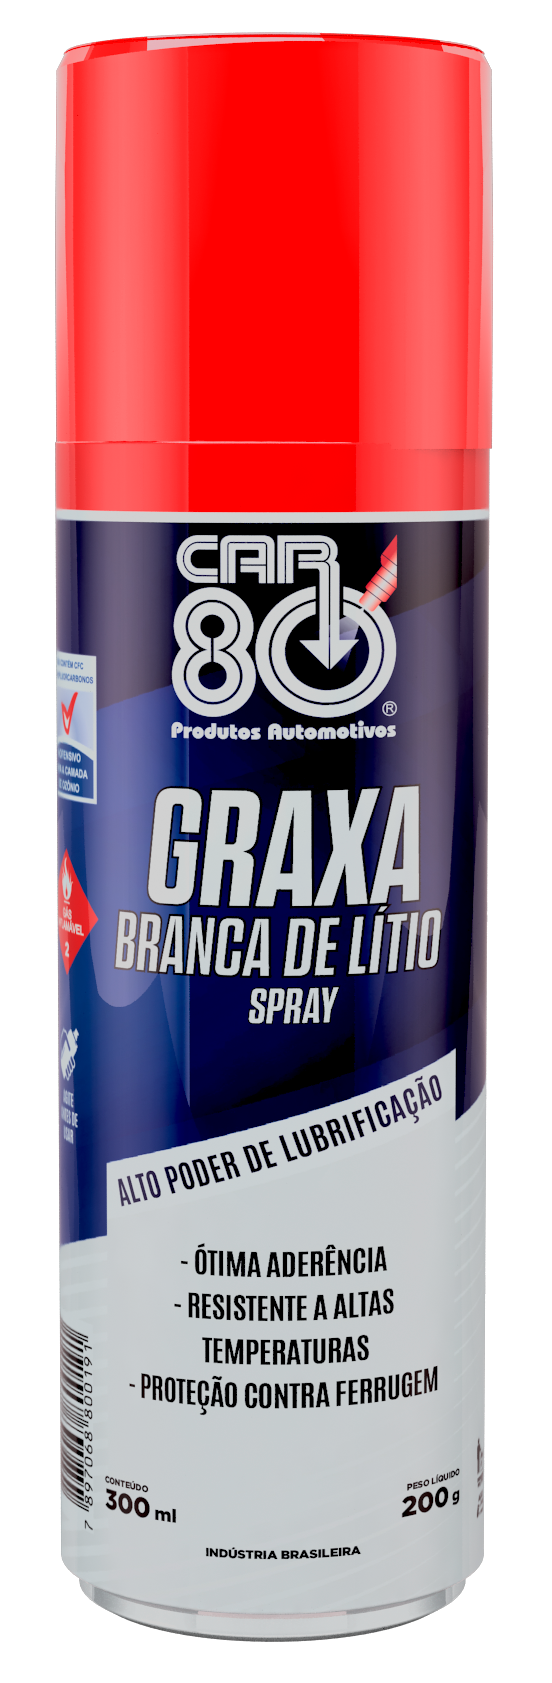 GRAXA BRANCA DE LITIO SPRAY CAR 80 300ML